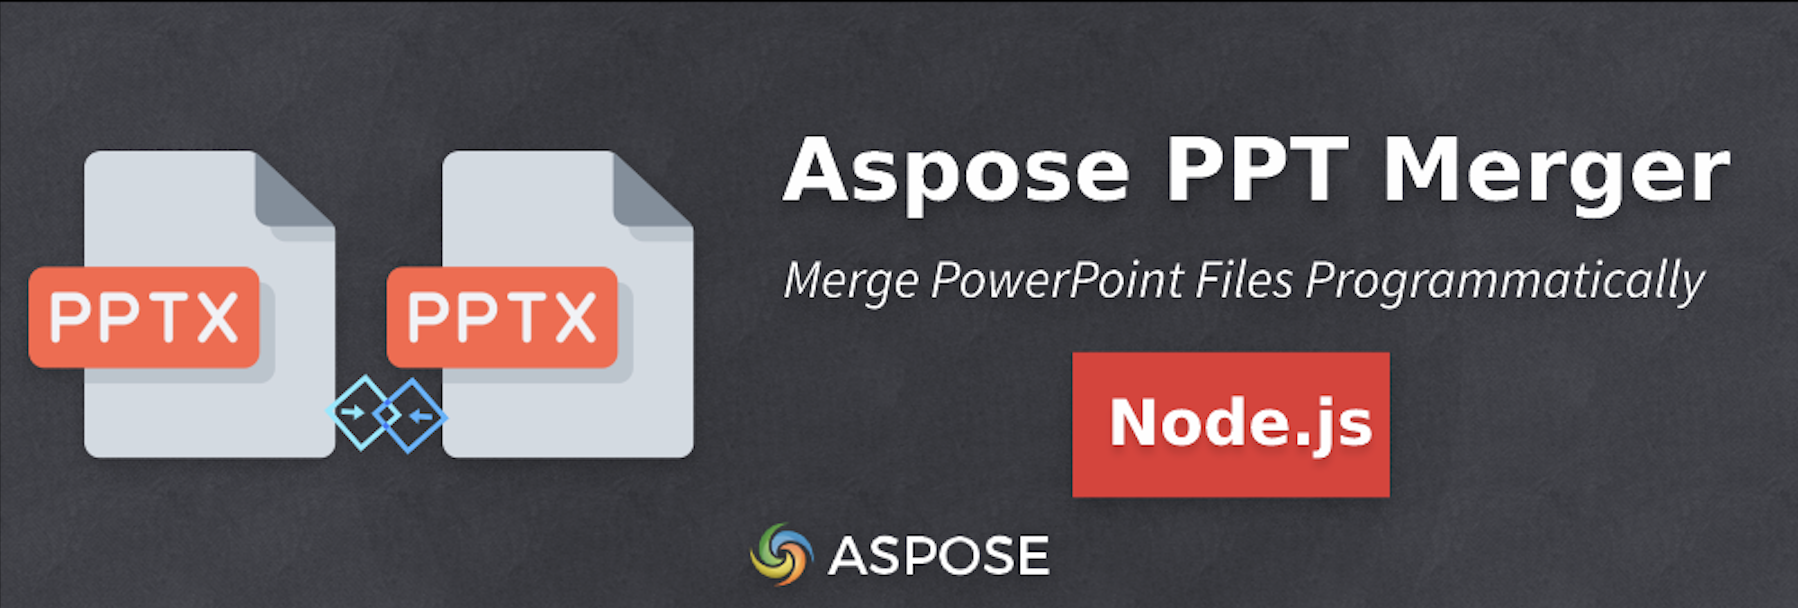 Объединение нескольких презентаций PowerPoint в Node.js — Aspose PPT Merger